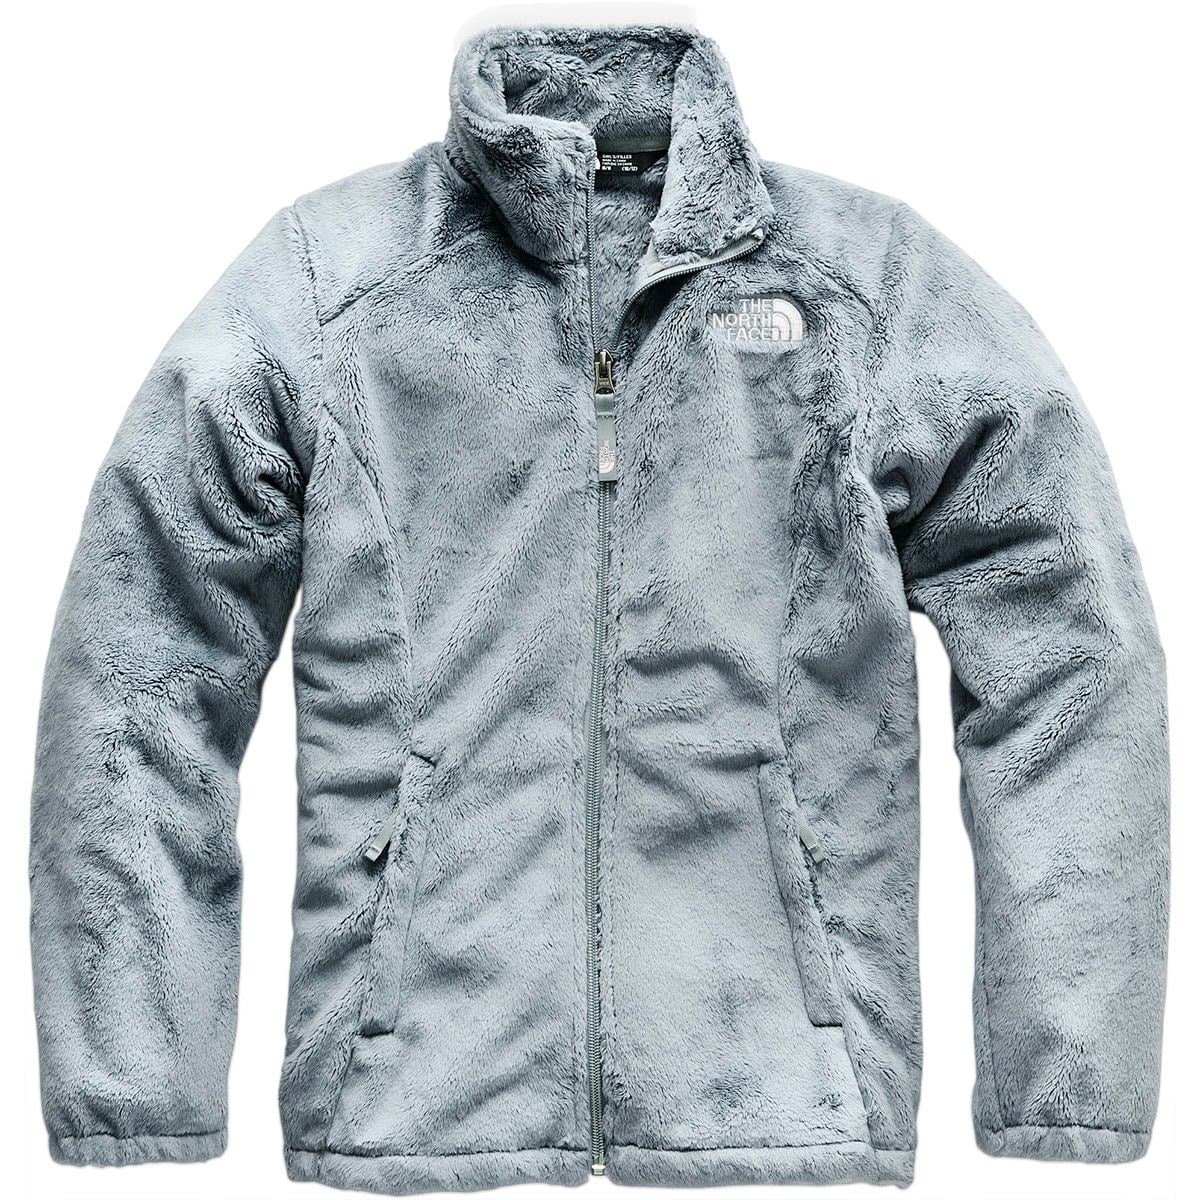 osolita fleece jacket